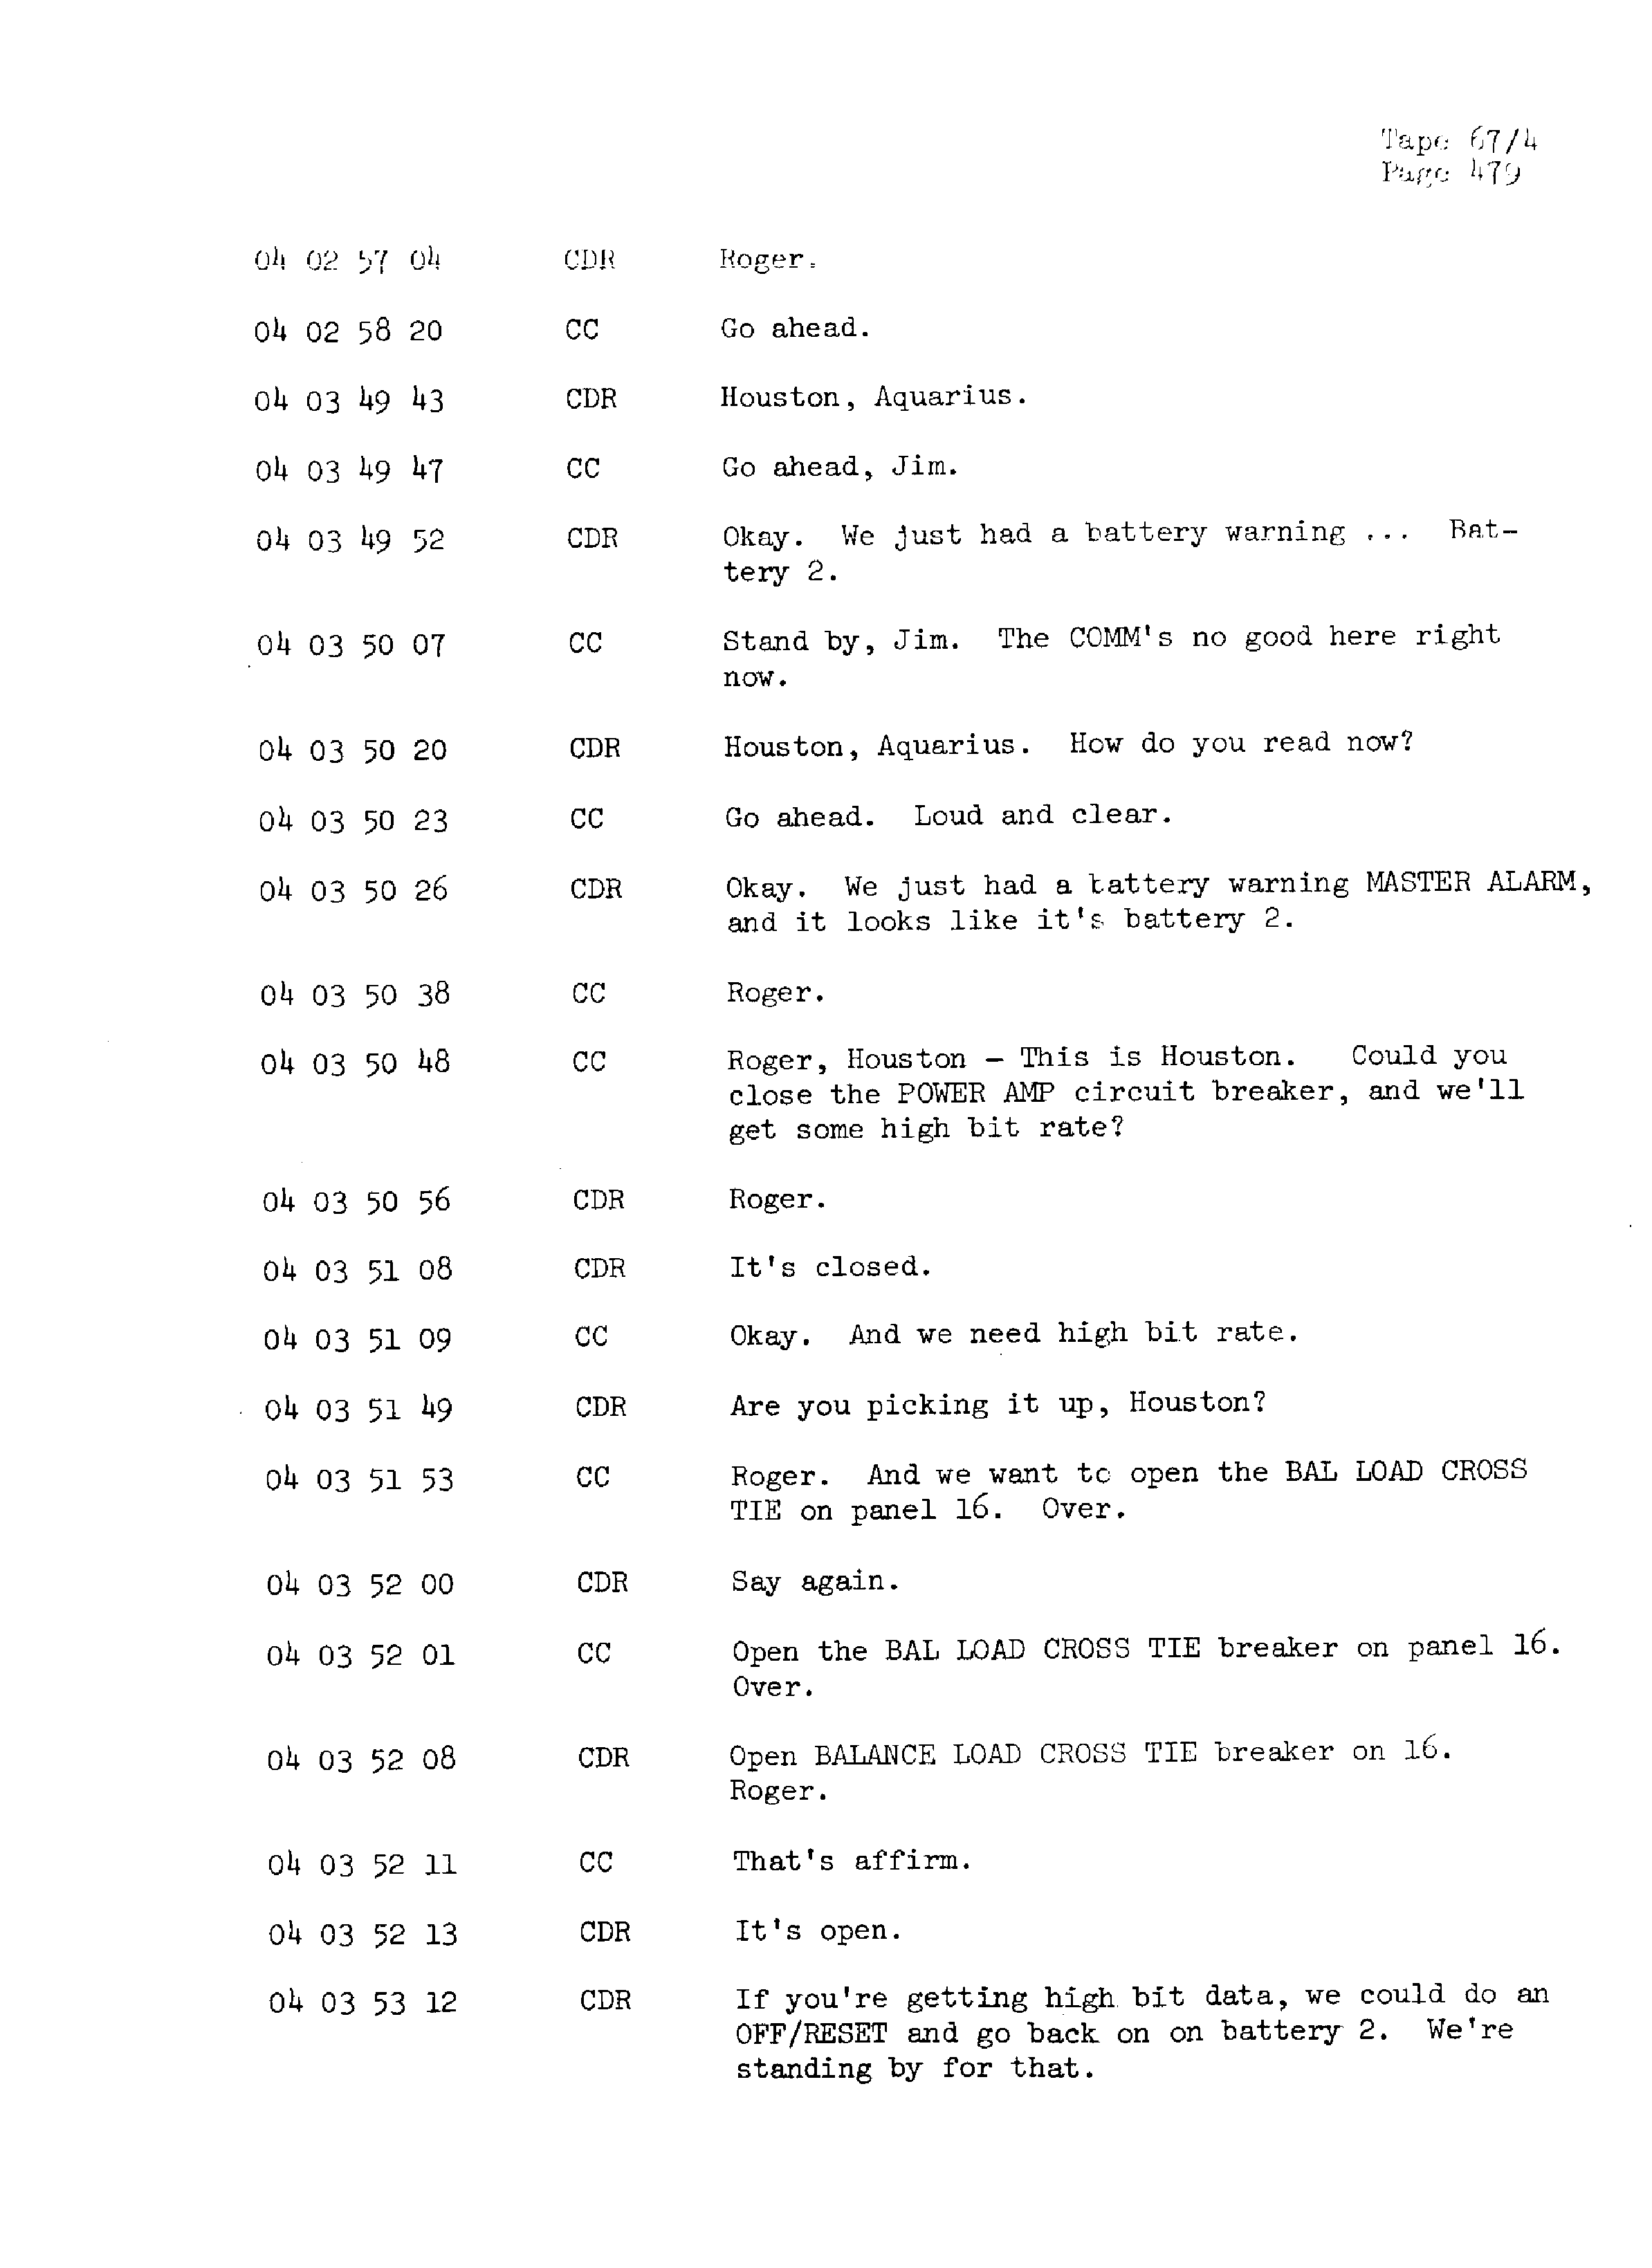 Page 486 of Apollo 13’s original transcript